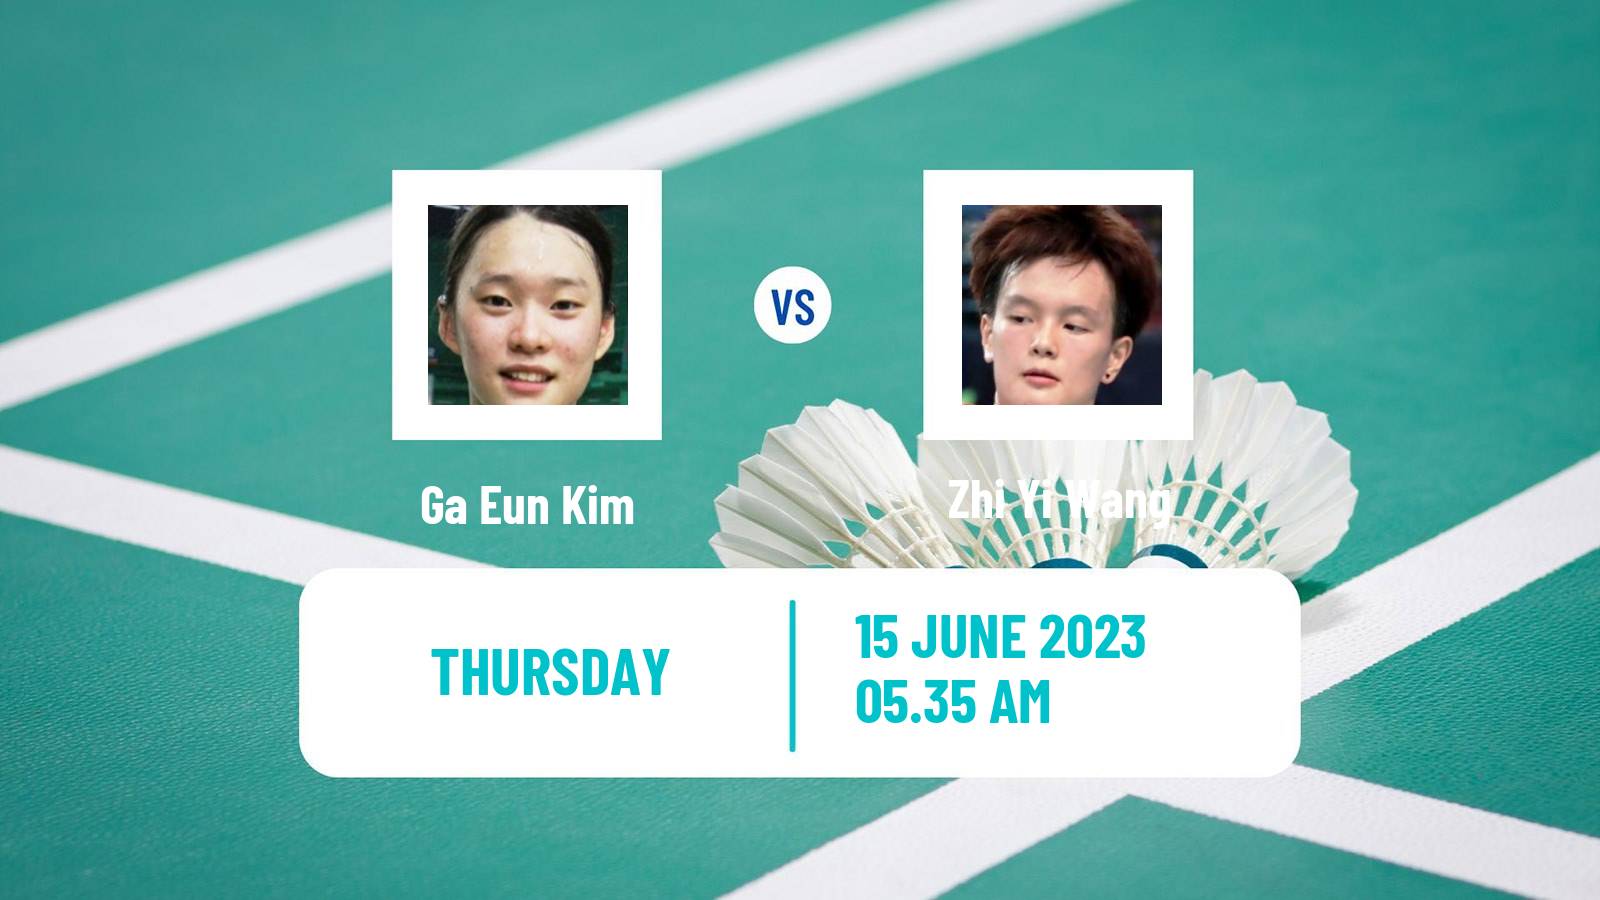 Badminton BWF World Tour Indonesia Open Women Ga Eun Kim - Zhi Yi Wang